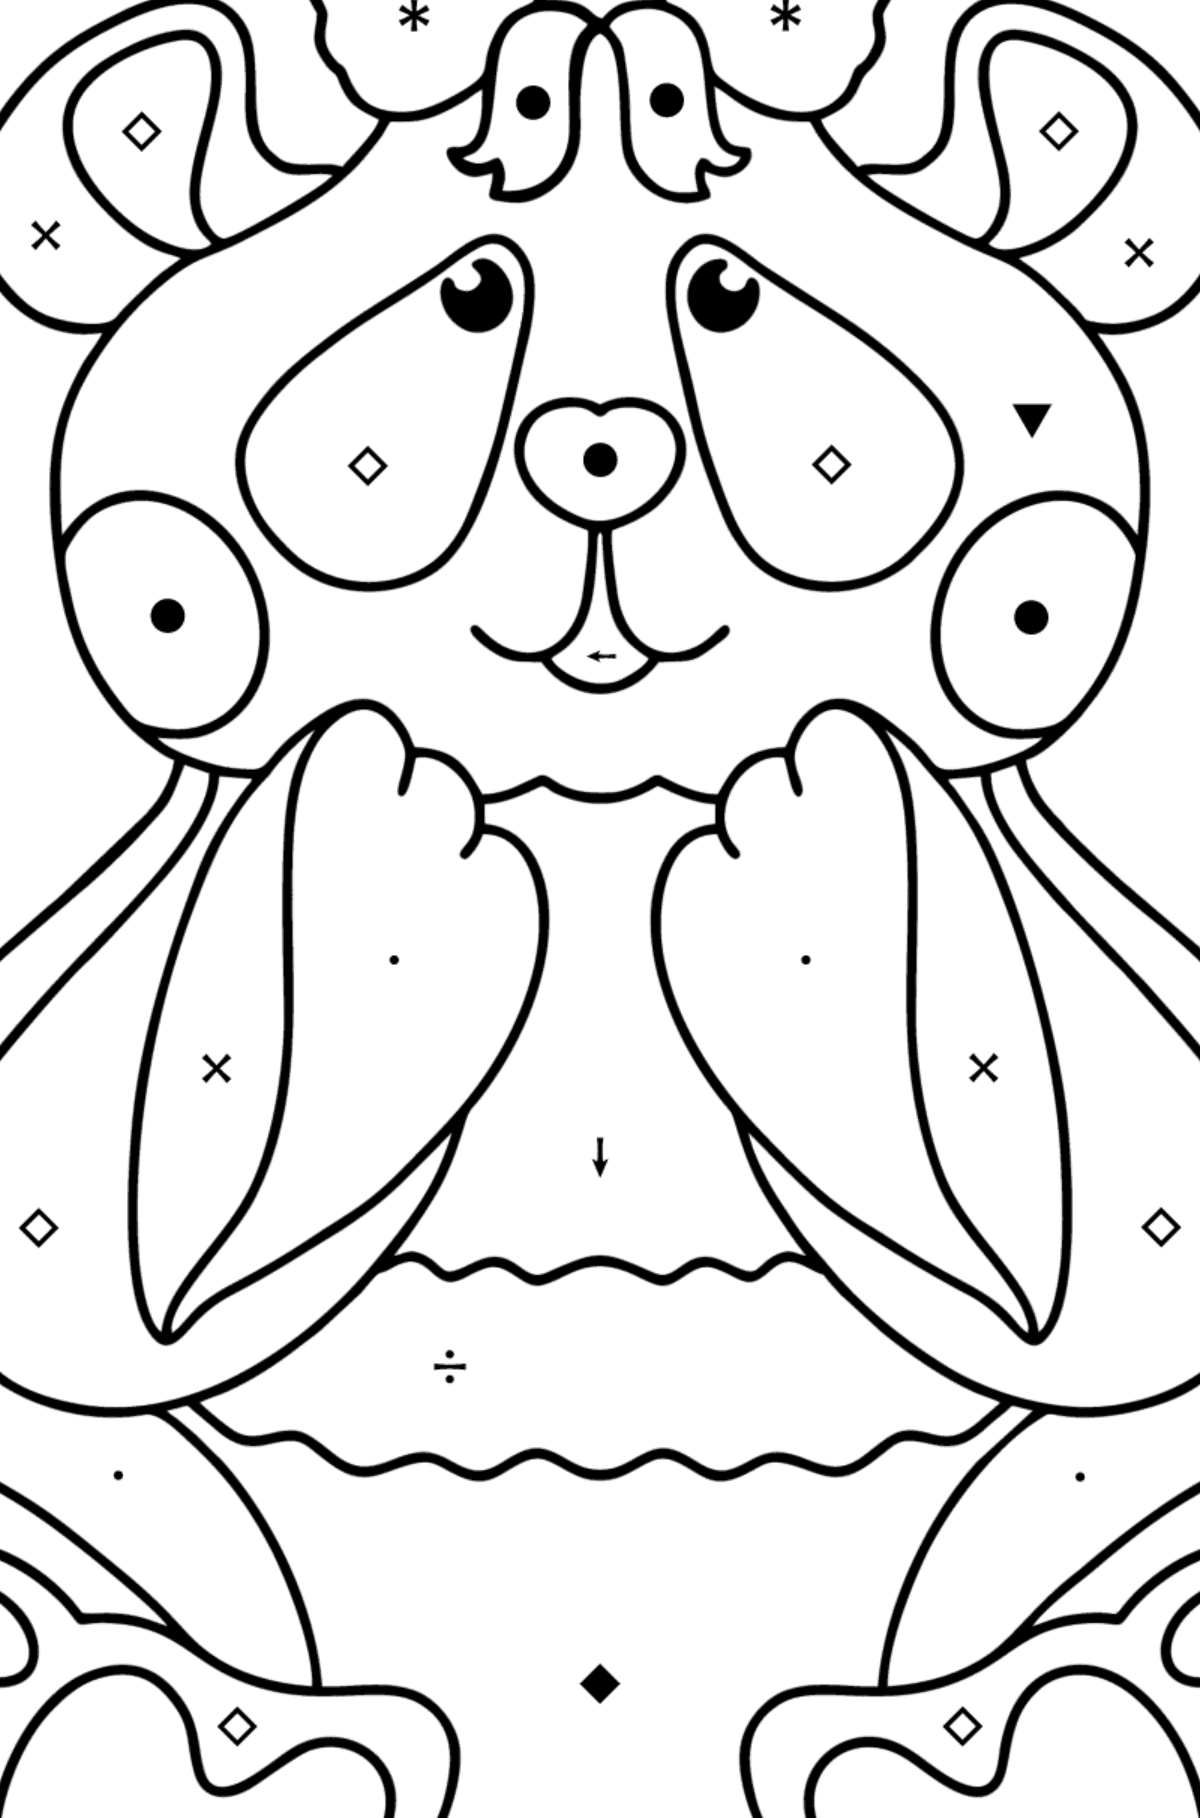 Coloriage bébé panda - Coloriage par Symboles pour les Enfants